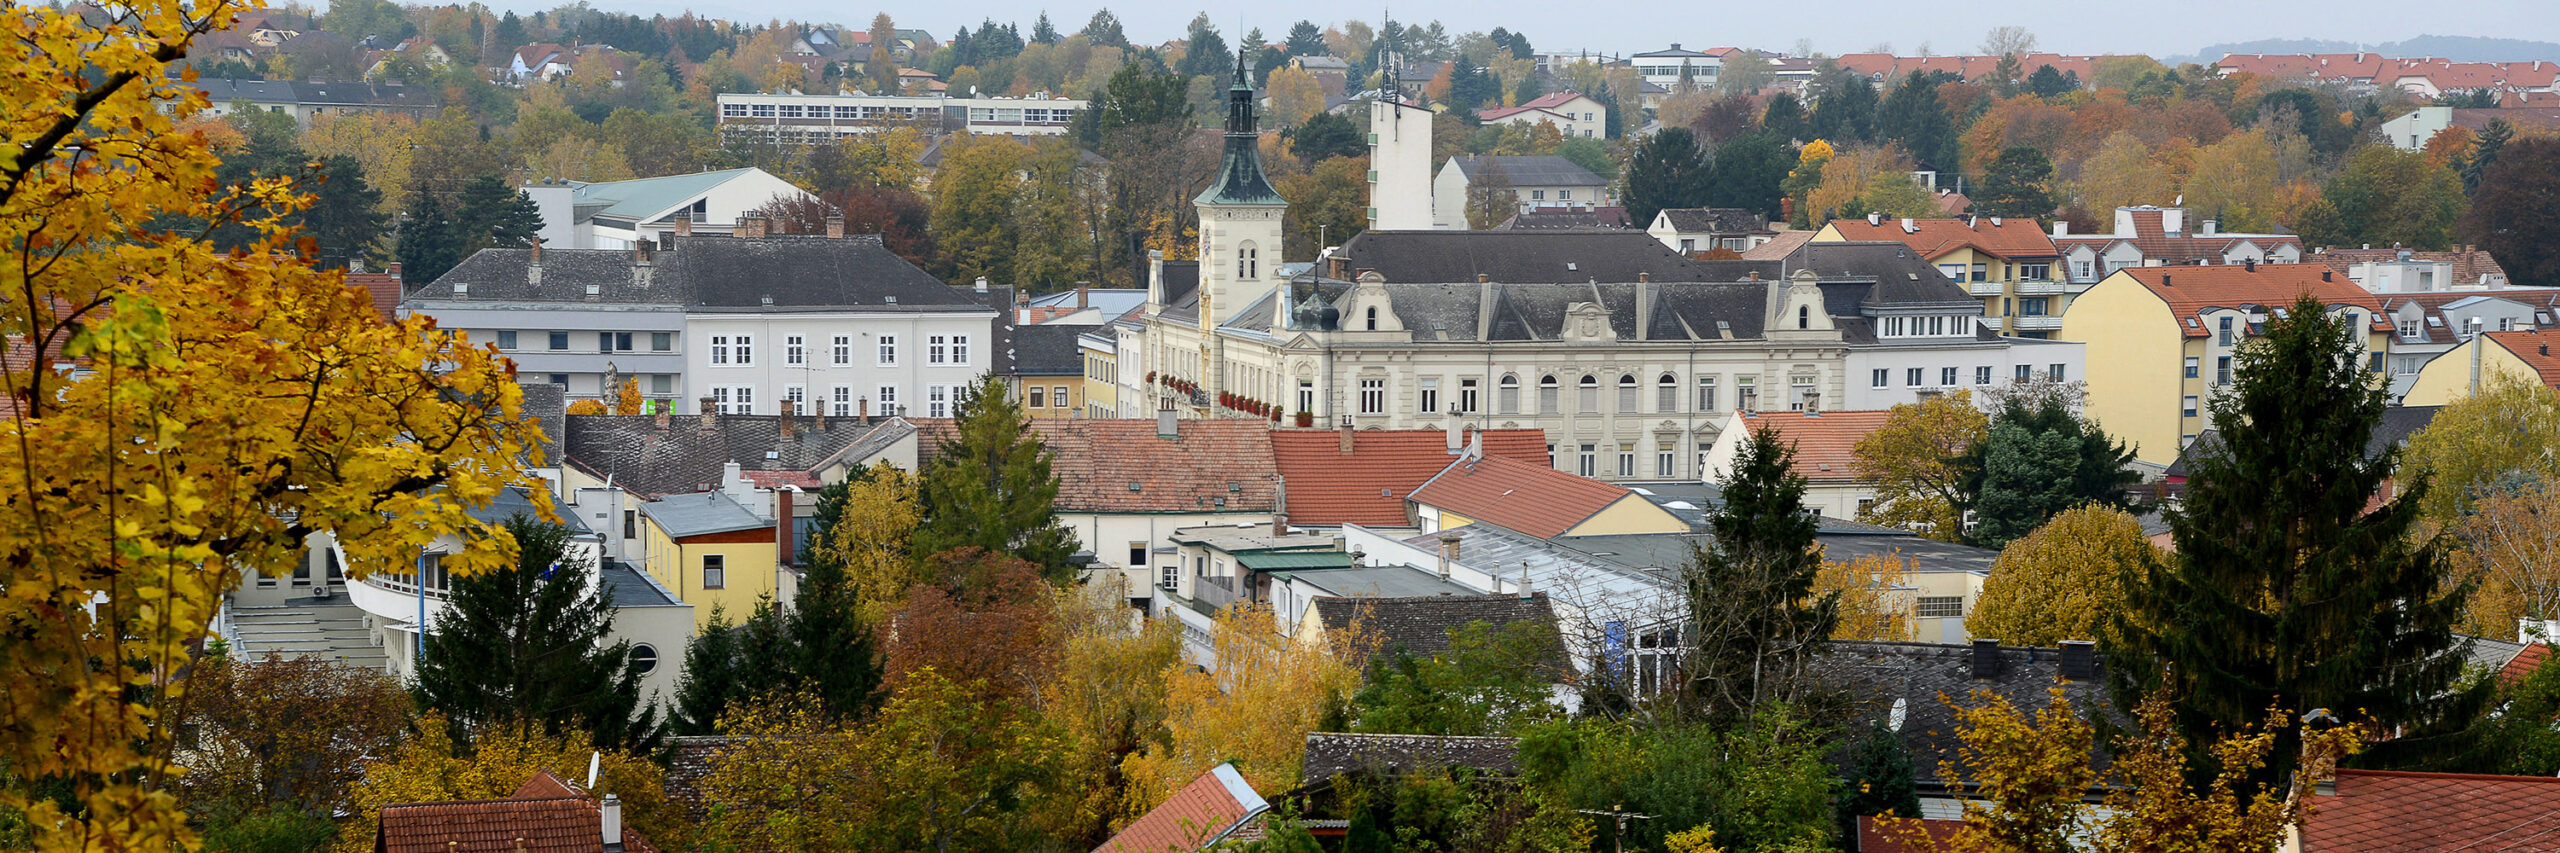 Blick über die Stadt Mistelbach